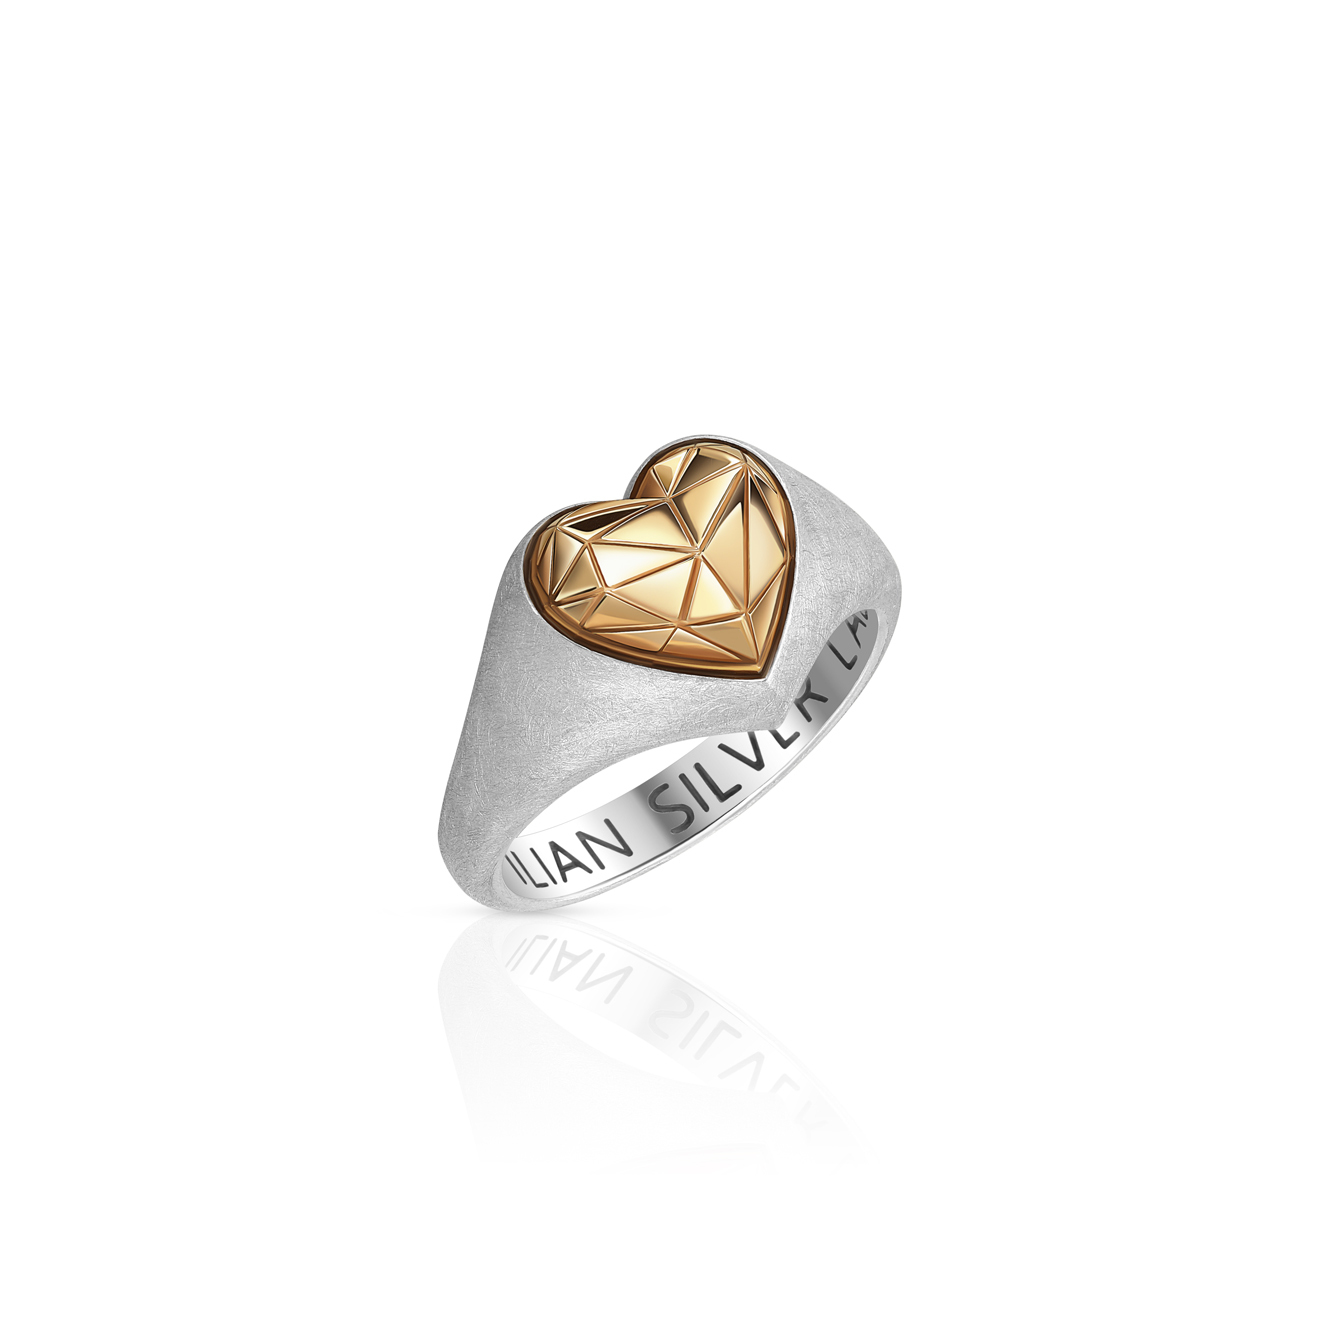 Maximilian Silver Label Кольцо-сердце из серебра Червовый валет позолоченное матовое